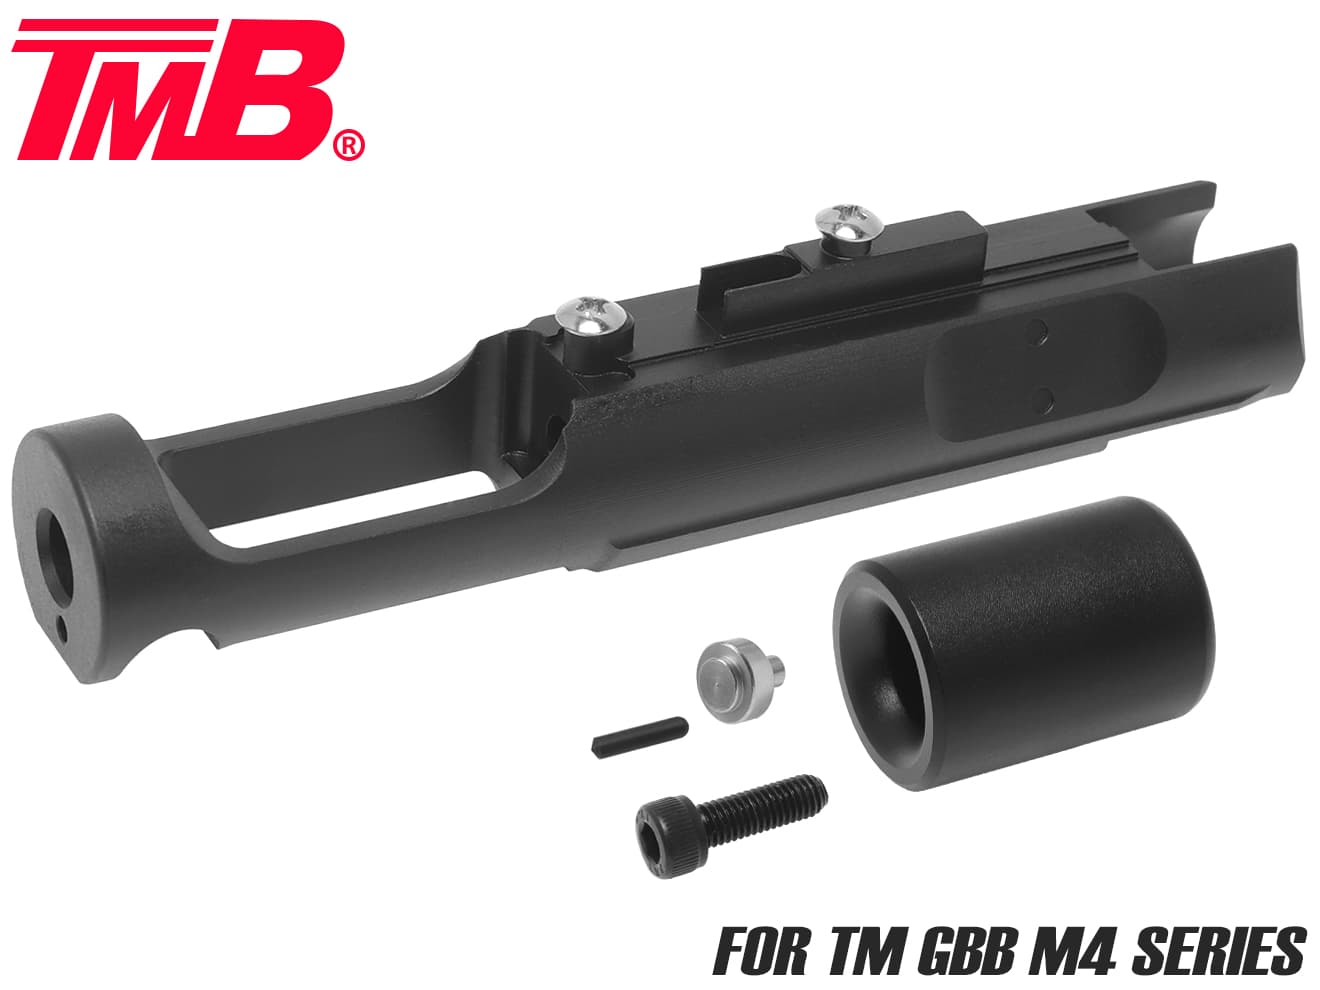 TMB-GSP-003B　TMB スチールCNC ボルトキャリア w/ アルミボルトB for マルイ GBB M4